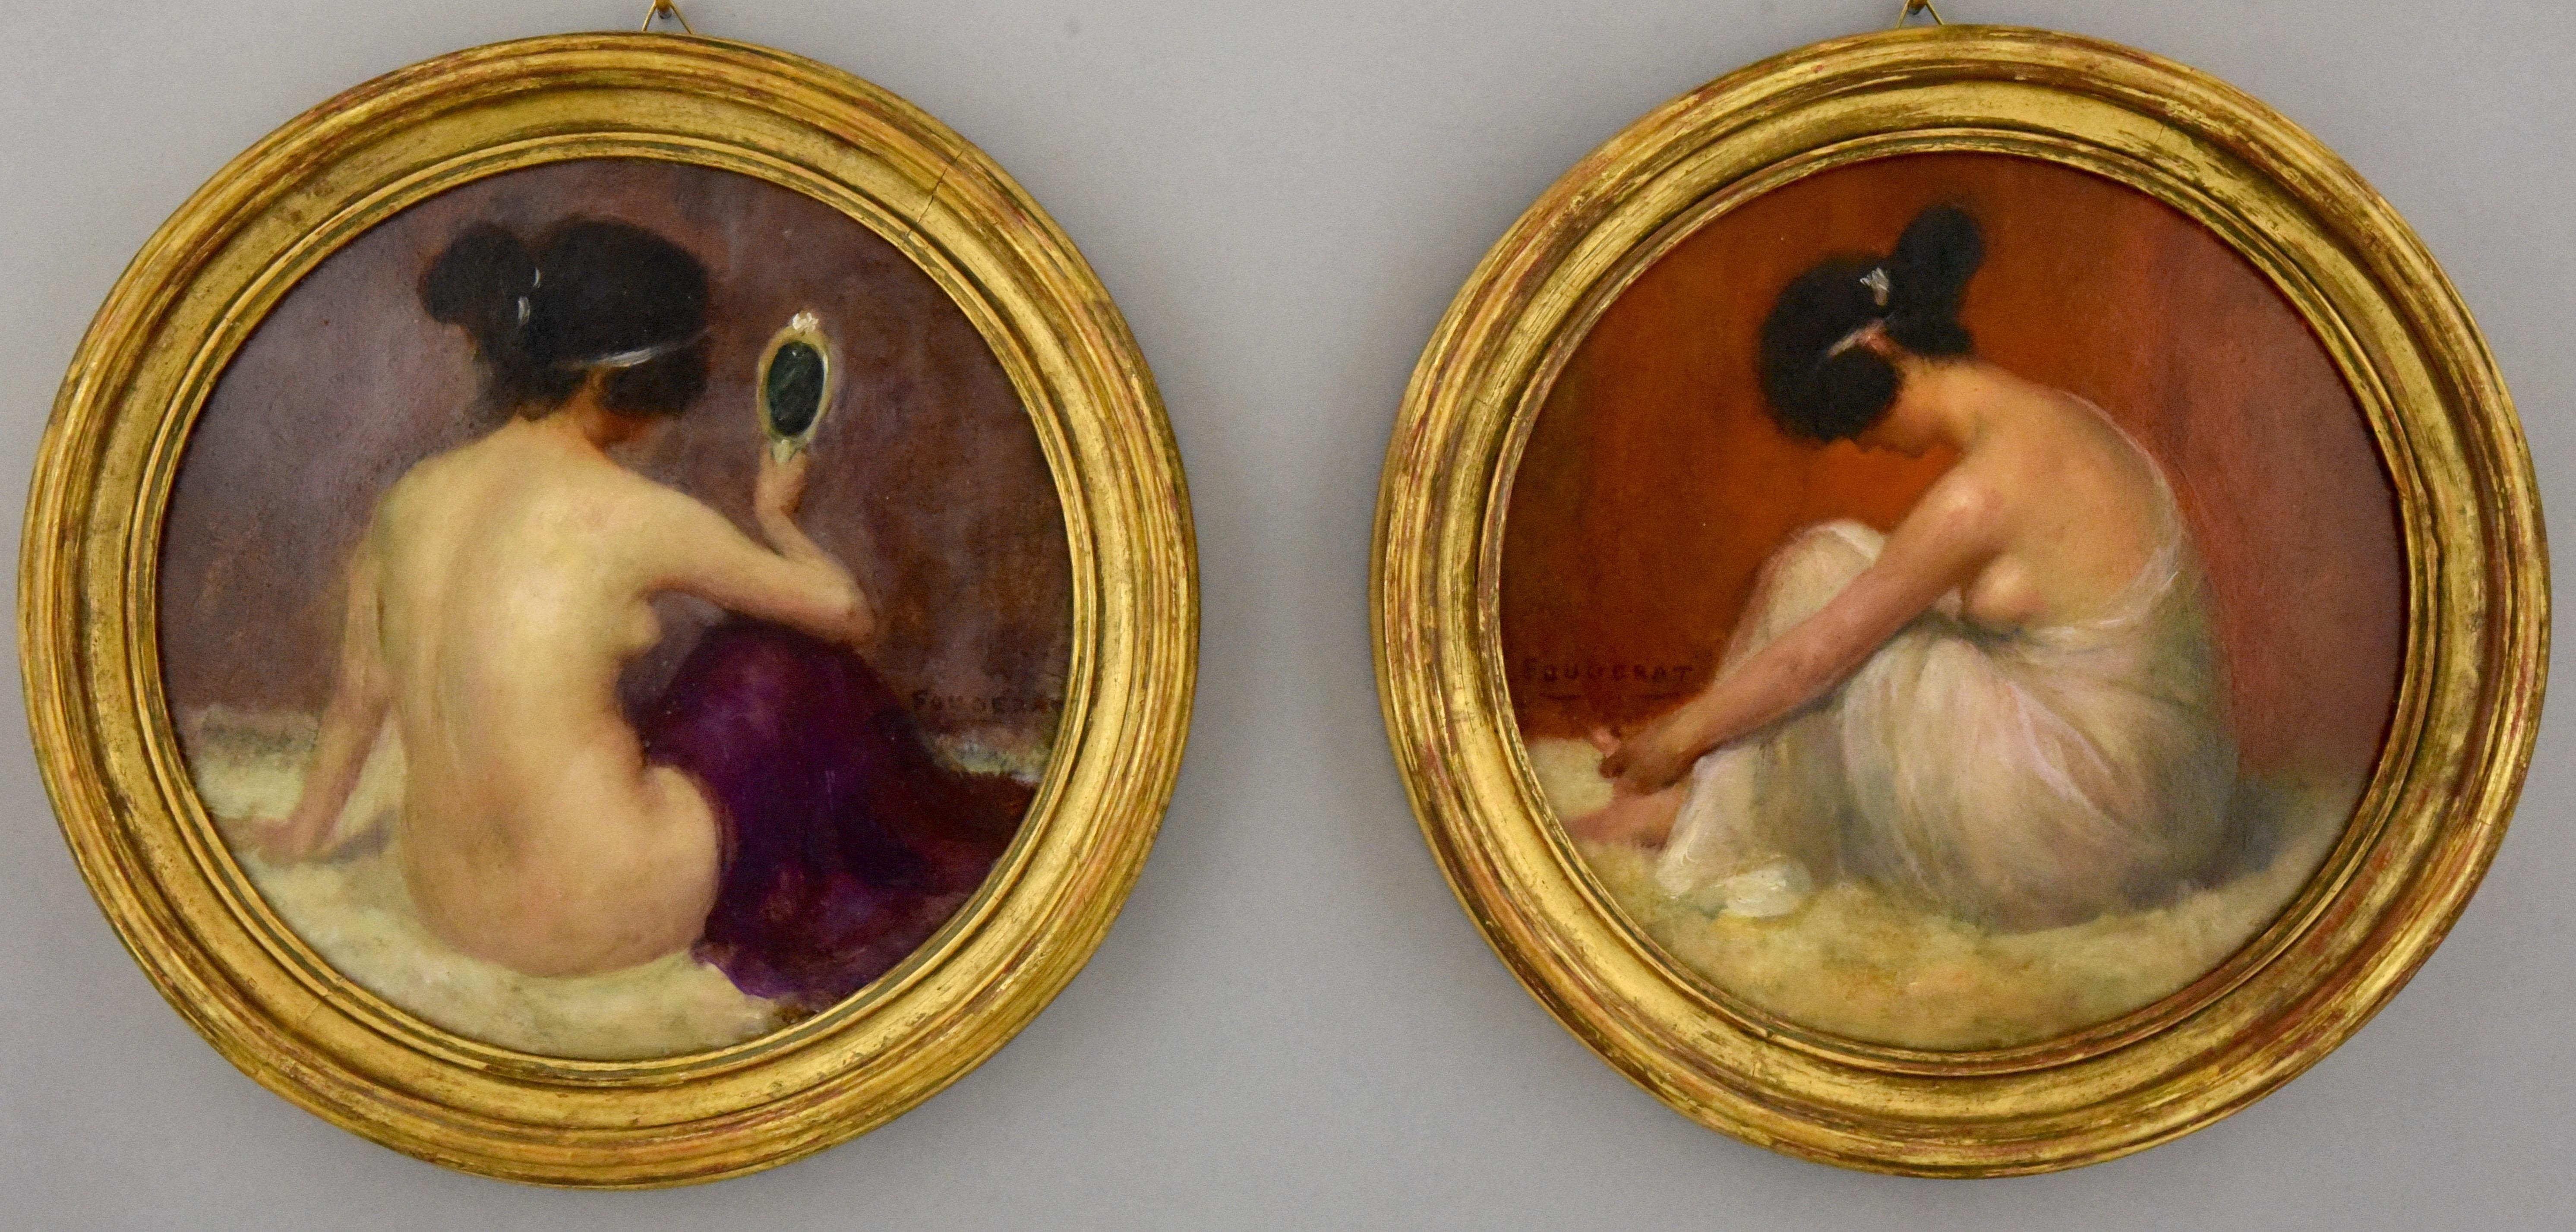 Hübsches Paar runder Jugendstil-Ölgemälde mit sitzenden Akten, um 1900.
Unterzeichnet von Emmanuel Fougerat, Frankreich 1869-1958.
Öl auf Karton. Mit original vergoldeten Holzrahmen. 

